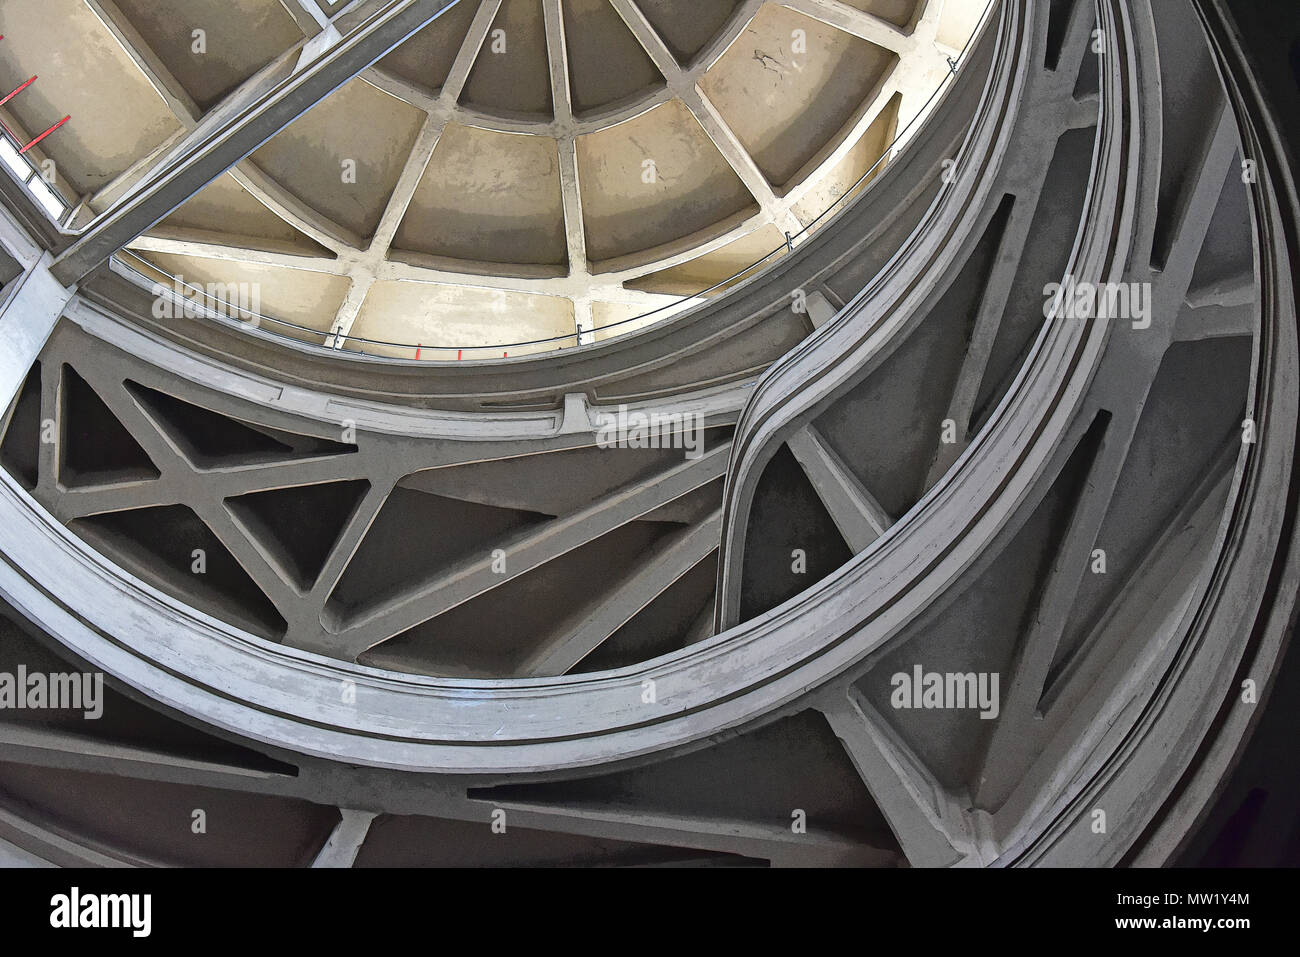 L'usine Fiat Lingotto, vue à la recherche jusqu'à la rampe en spirale de l'ouest, montrant la construction bétonnés coulé avec nervures structurelles, Turin, Italie Banque D'Images